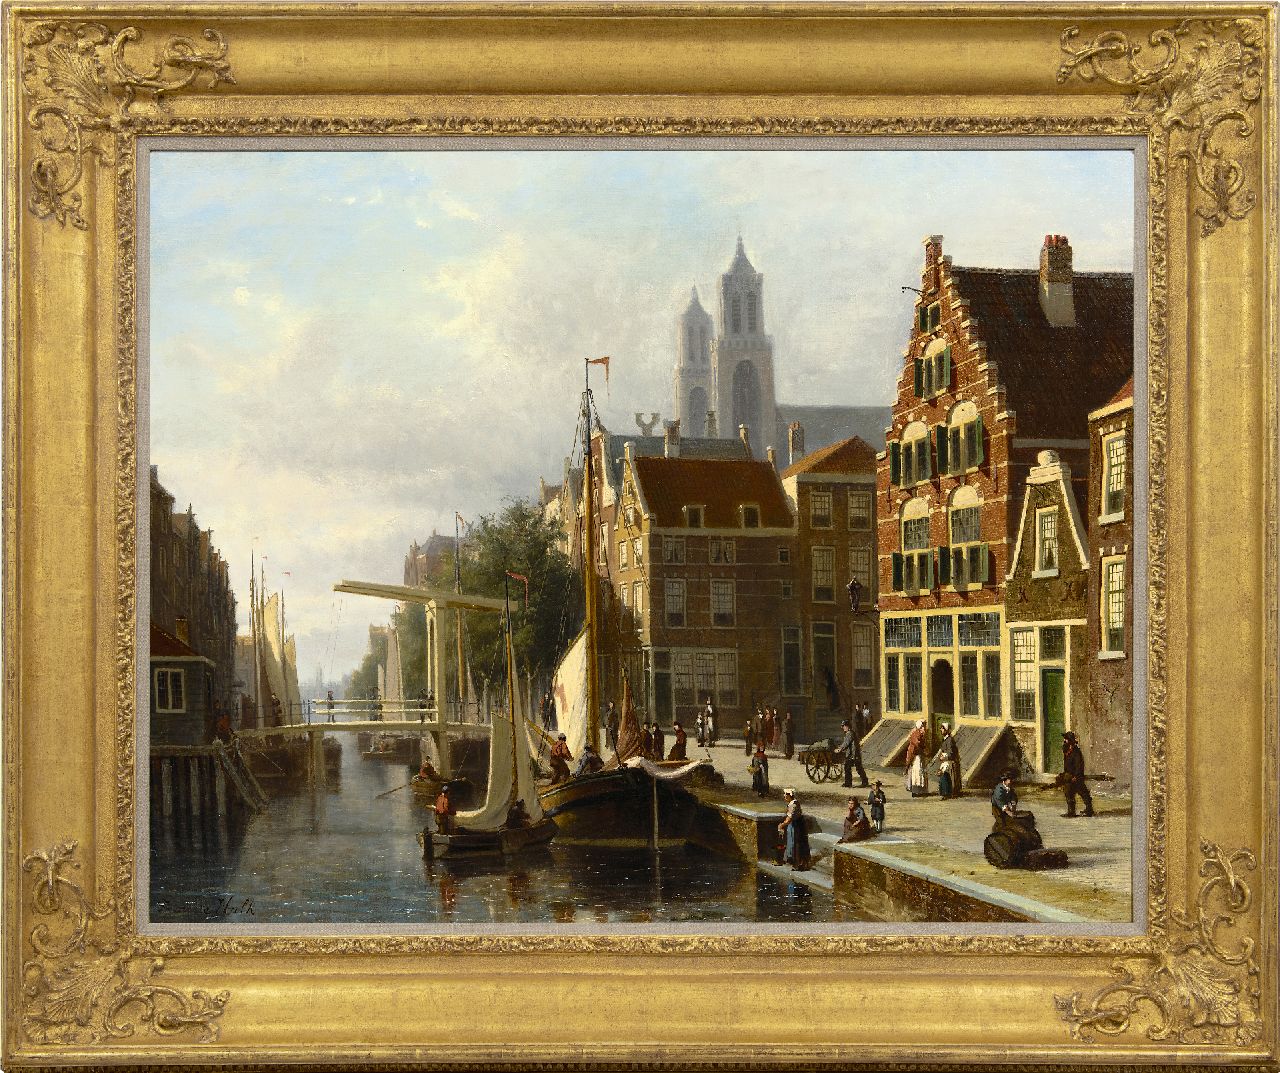 Hulk sr. J.F.  | Johannes Frederik Hulk sr., Moored sailing vessels in a Dutch canal, oil on canvas 71.9 x 92.7 cm, signed l.l.